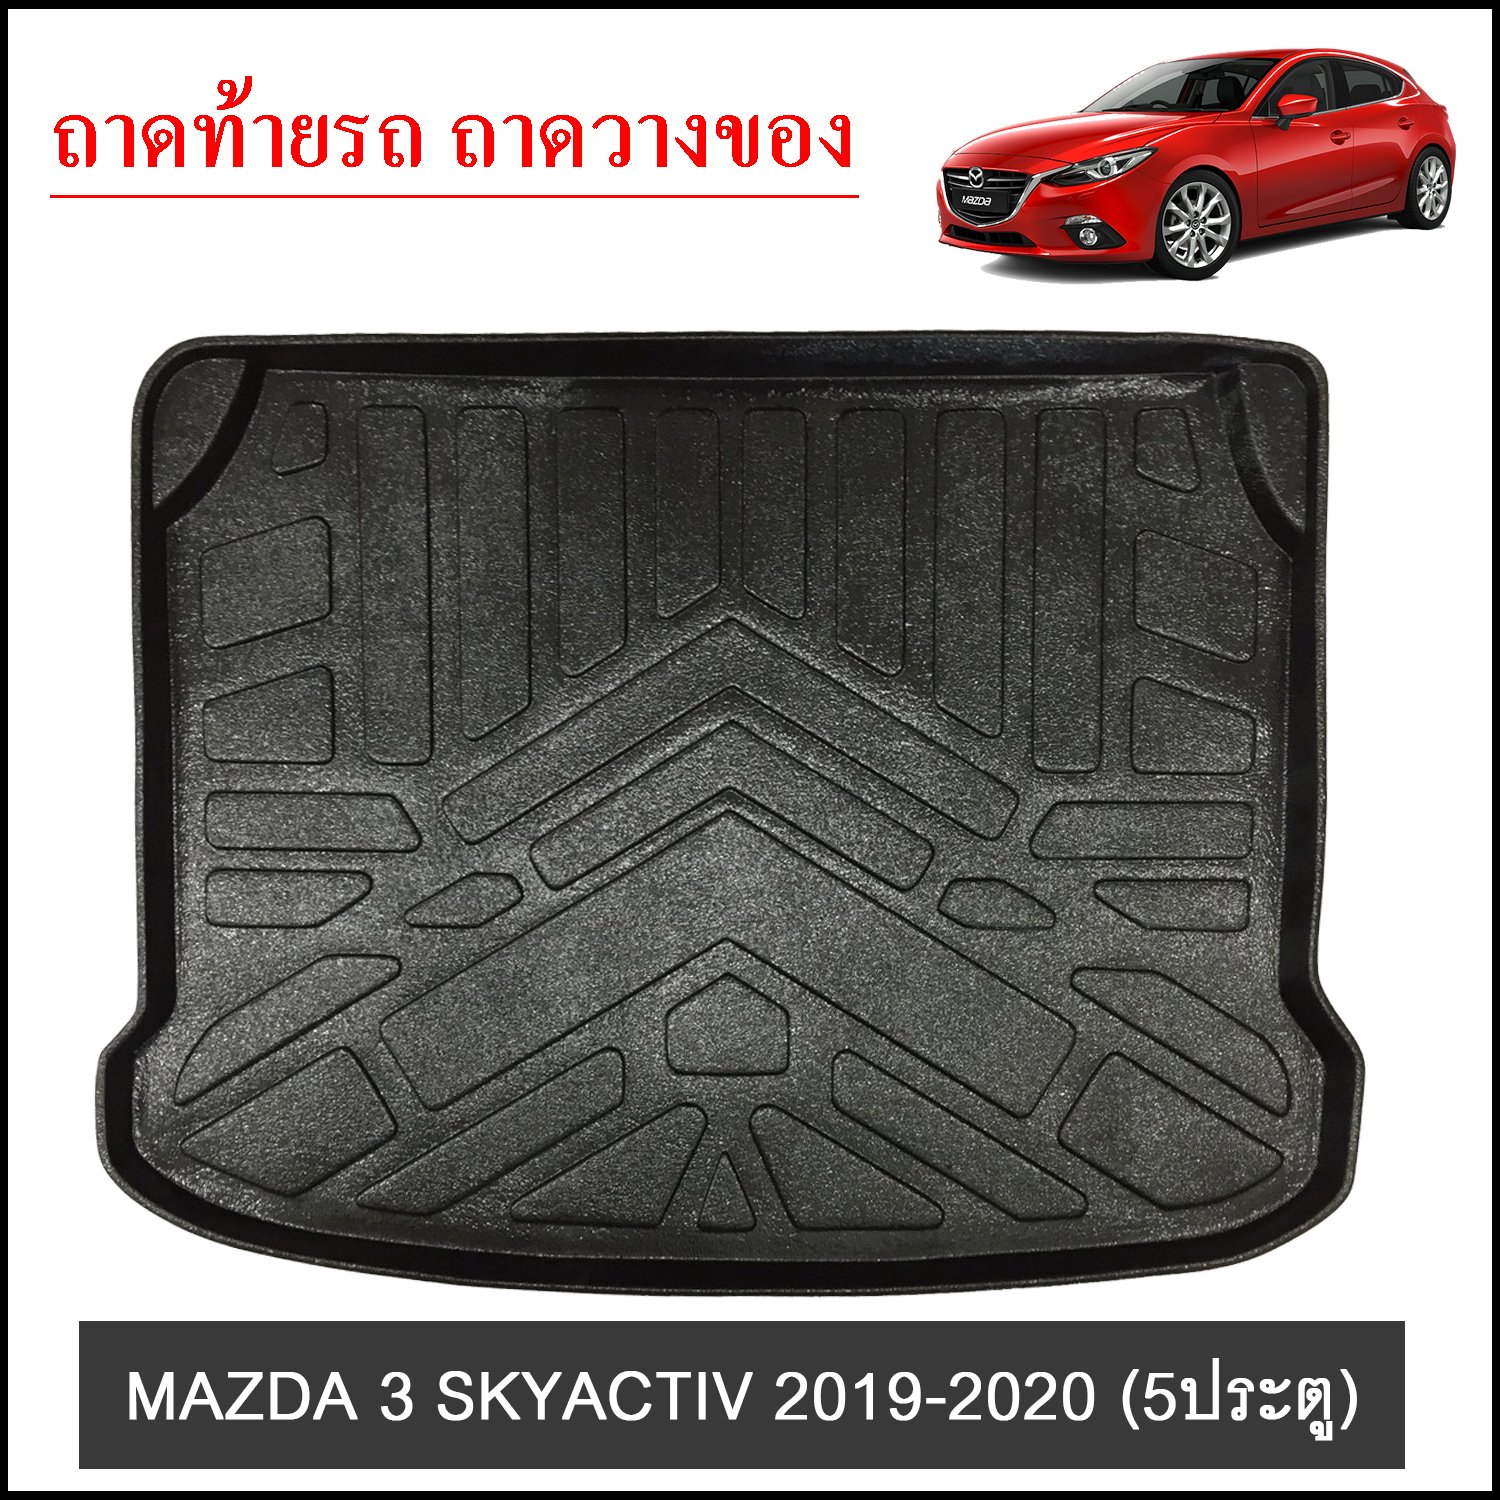 MAZDA 3 SKYACTIV 2019-2020 Hatchback